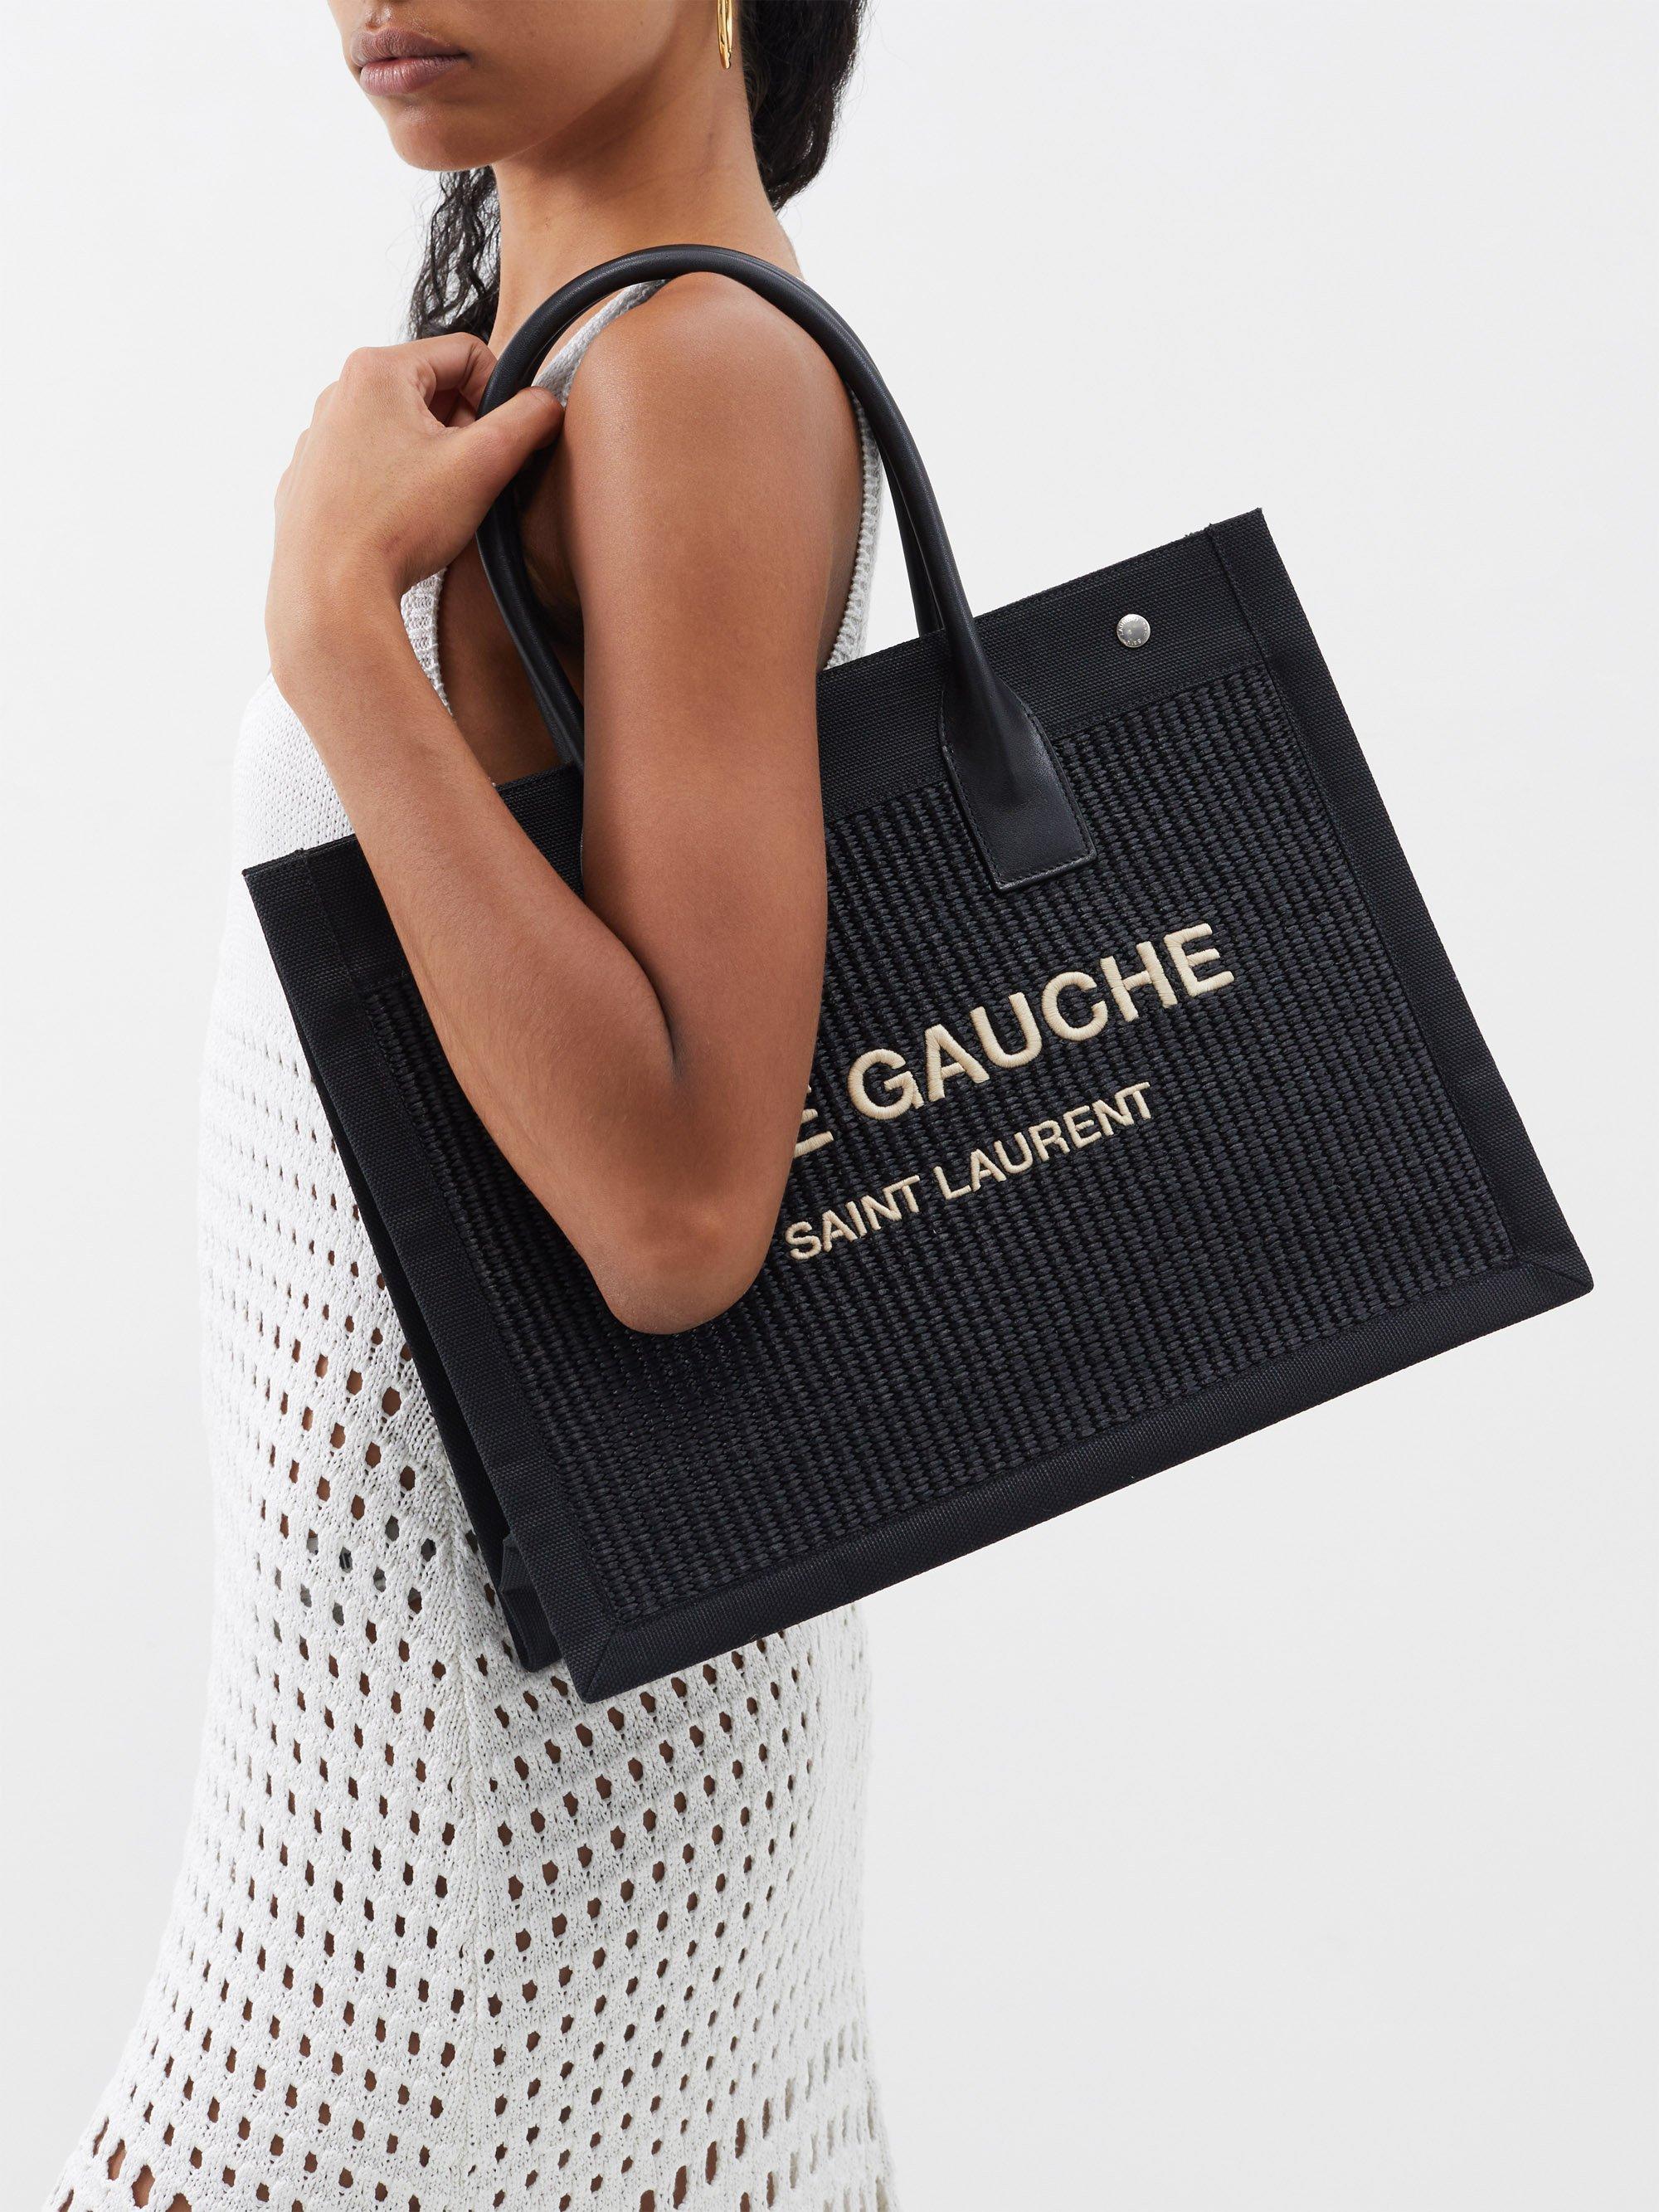 Yves Saint Laurent, Bags, Saint Laurent Black Leather Small Rive Gauche  Tote